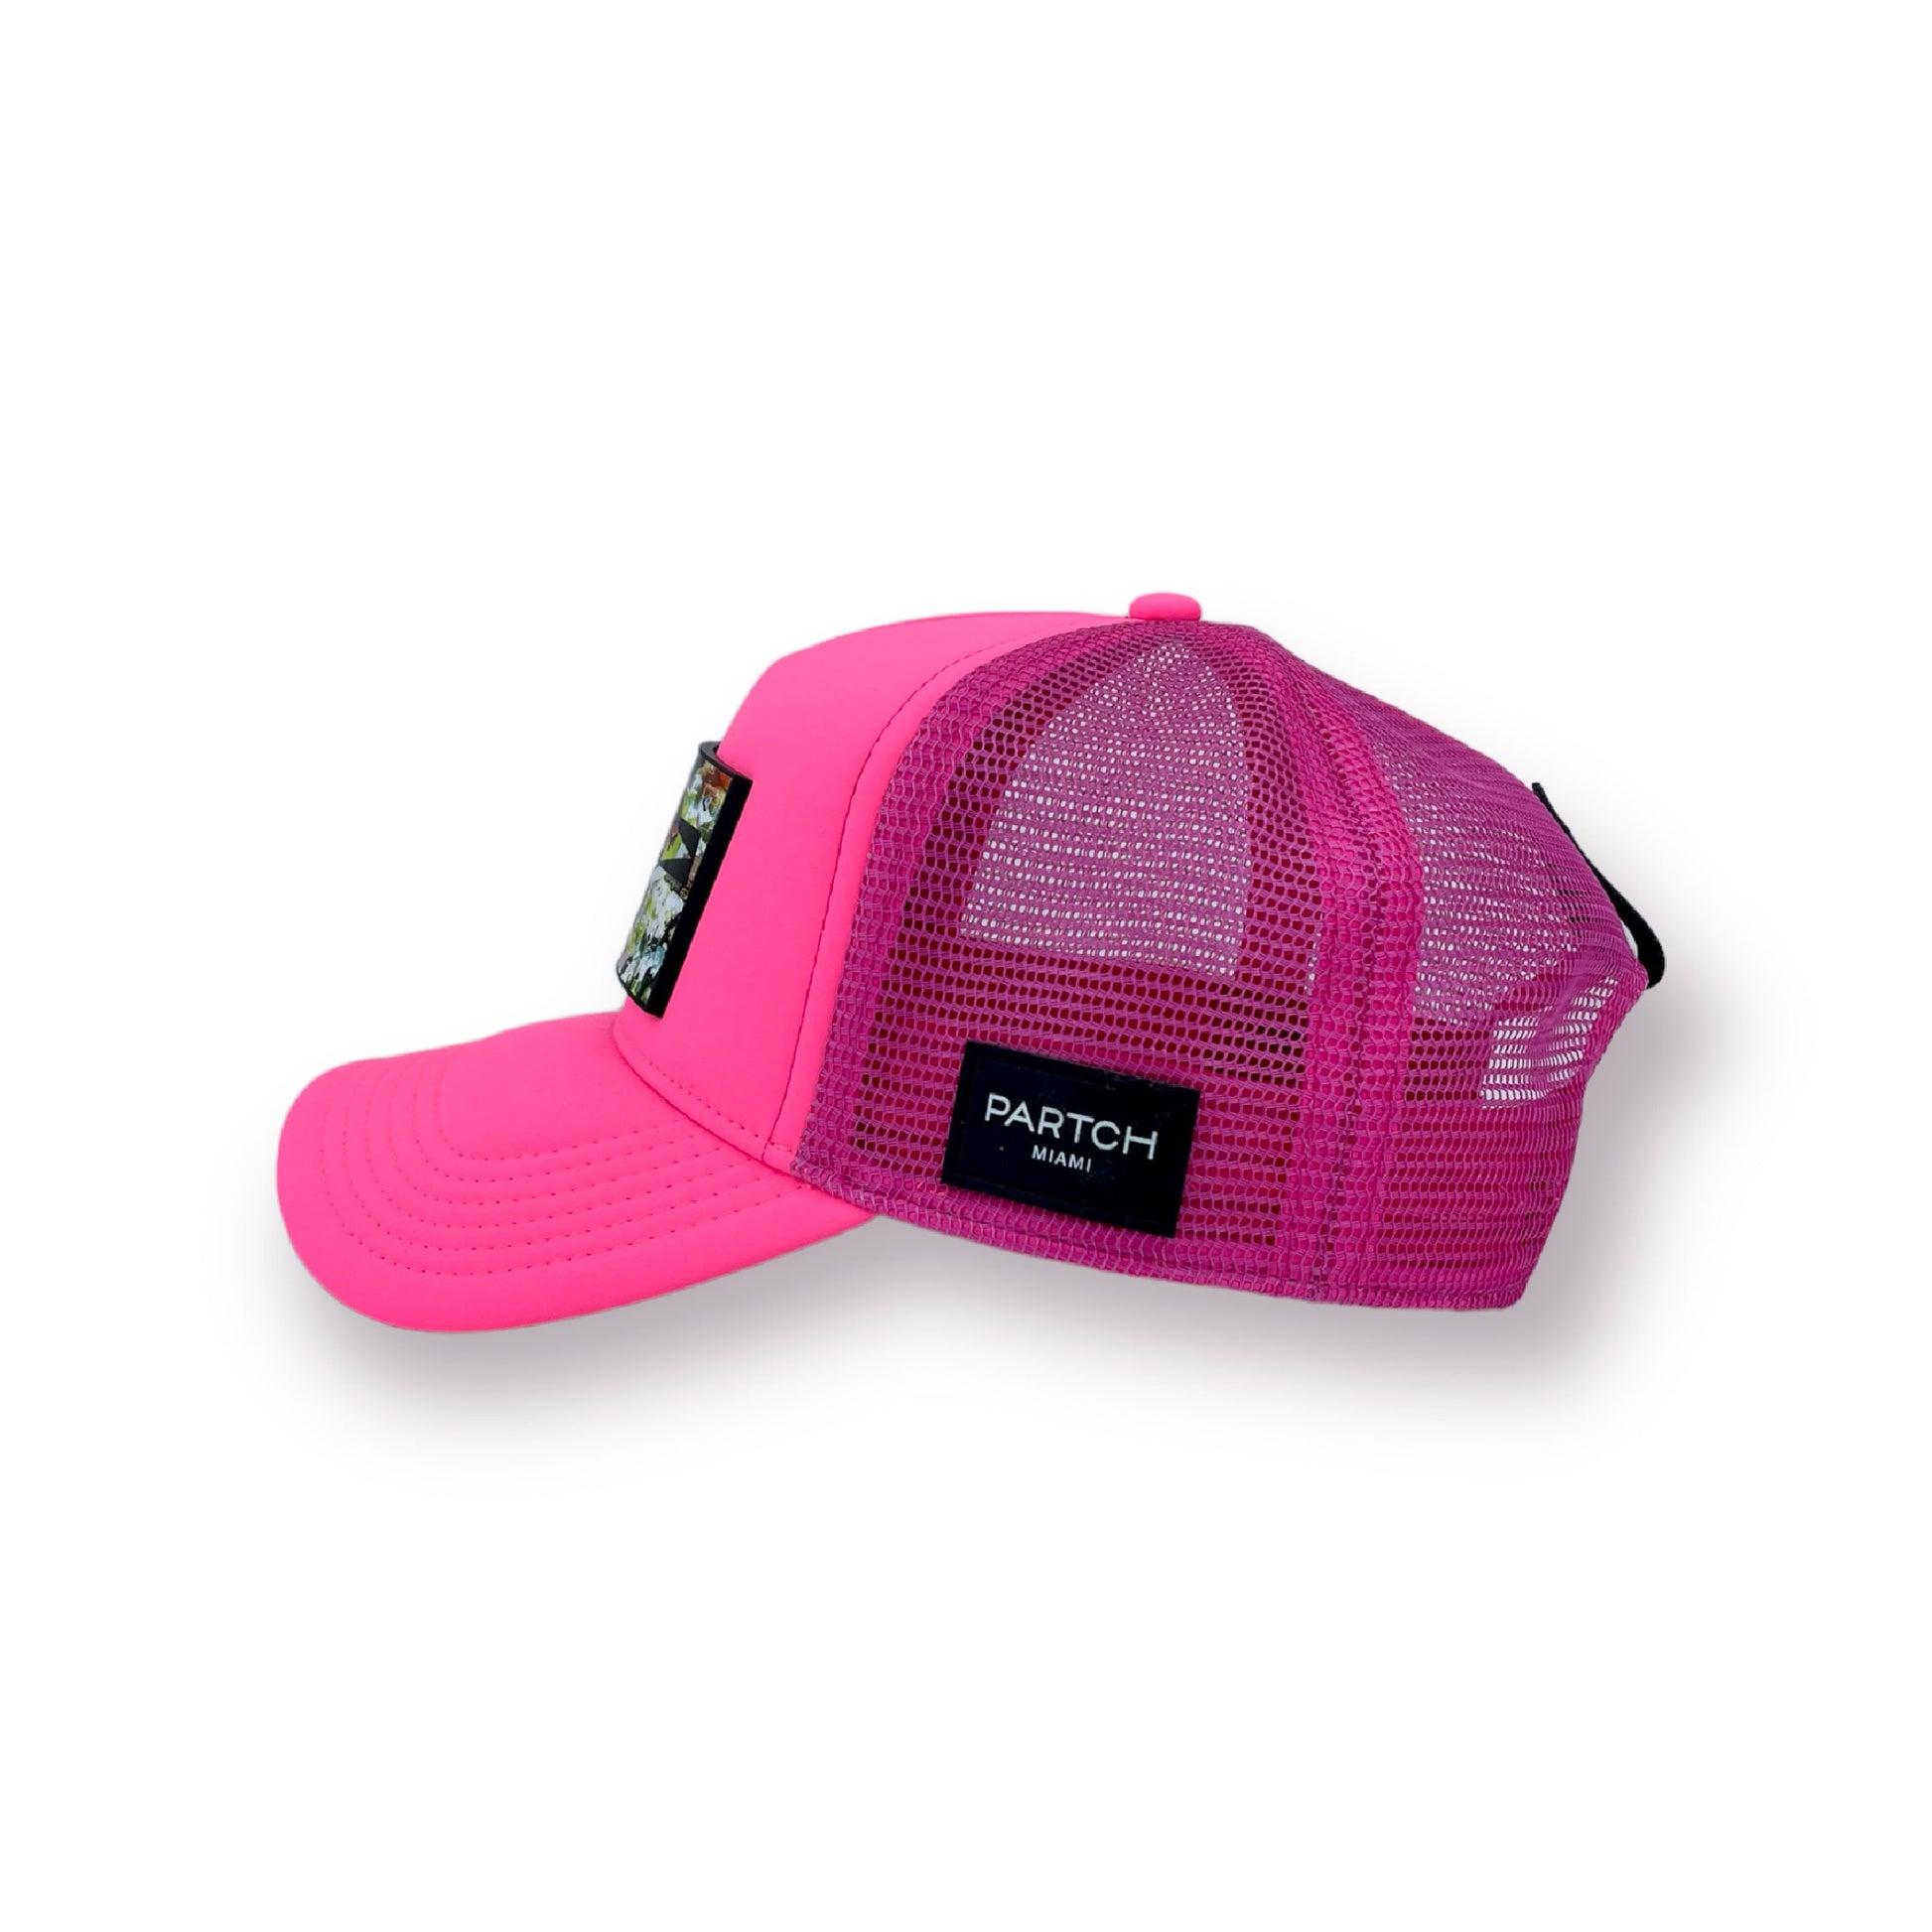 Partch pink trucker hat art unixvi partch-clip removable